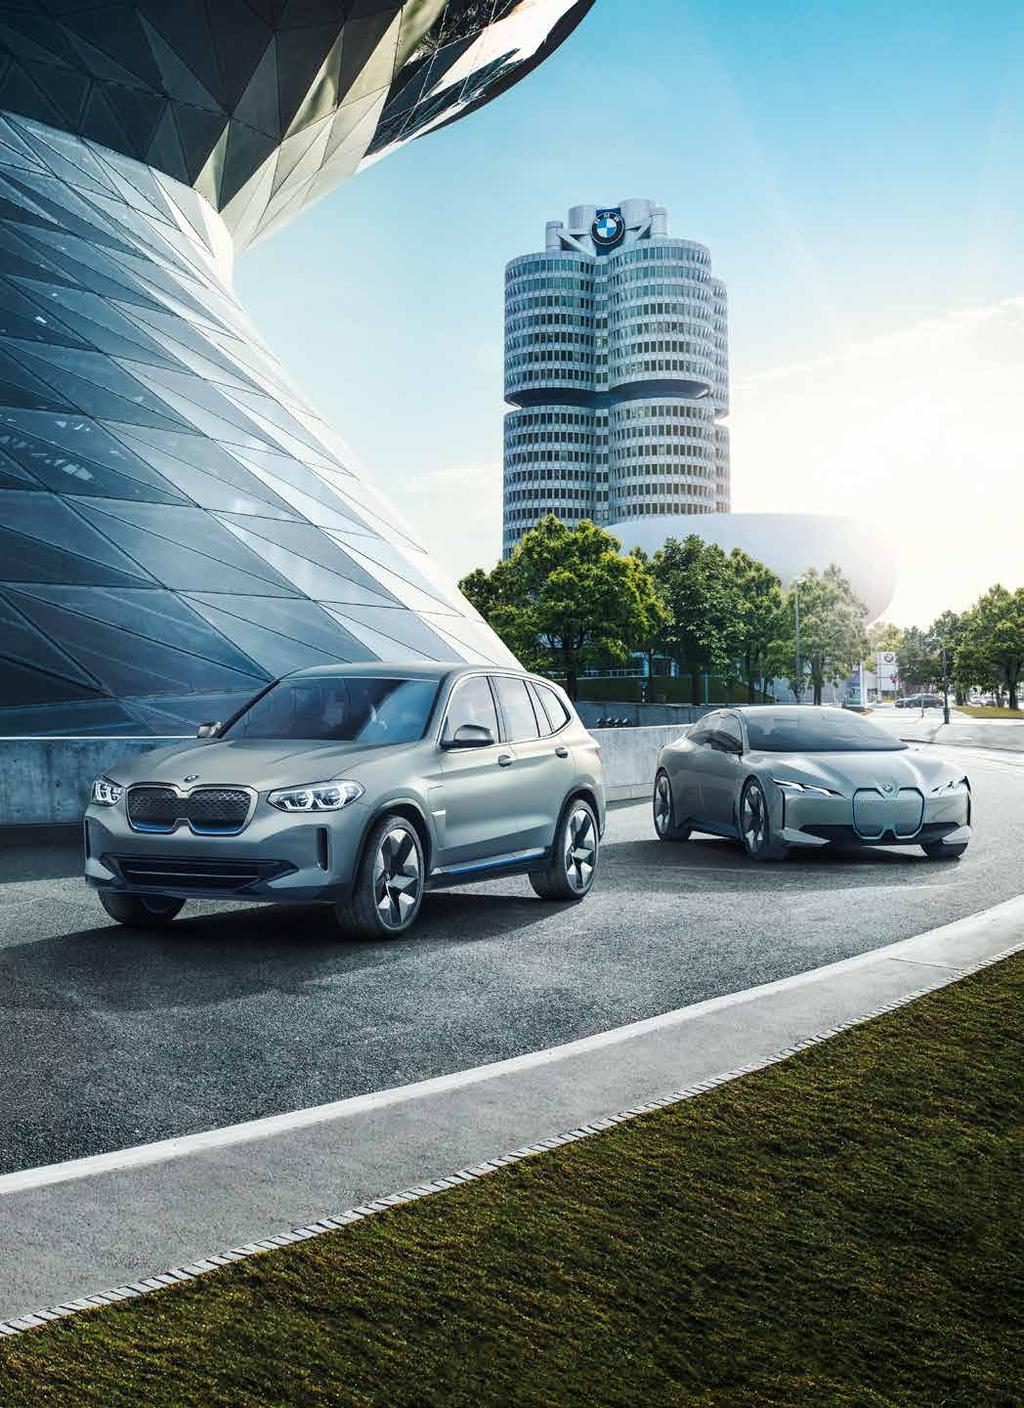 MORGONDAGENS KÖRGLÄDJE. DEN UPPKOPPLADE BILEN. Hur vi skapar framtidens självkörande teknik. Få ut mer av din bil med BMW Connected Drive.